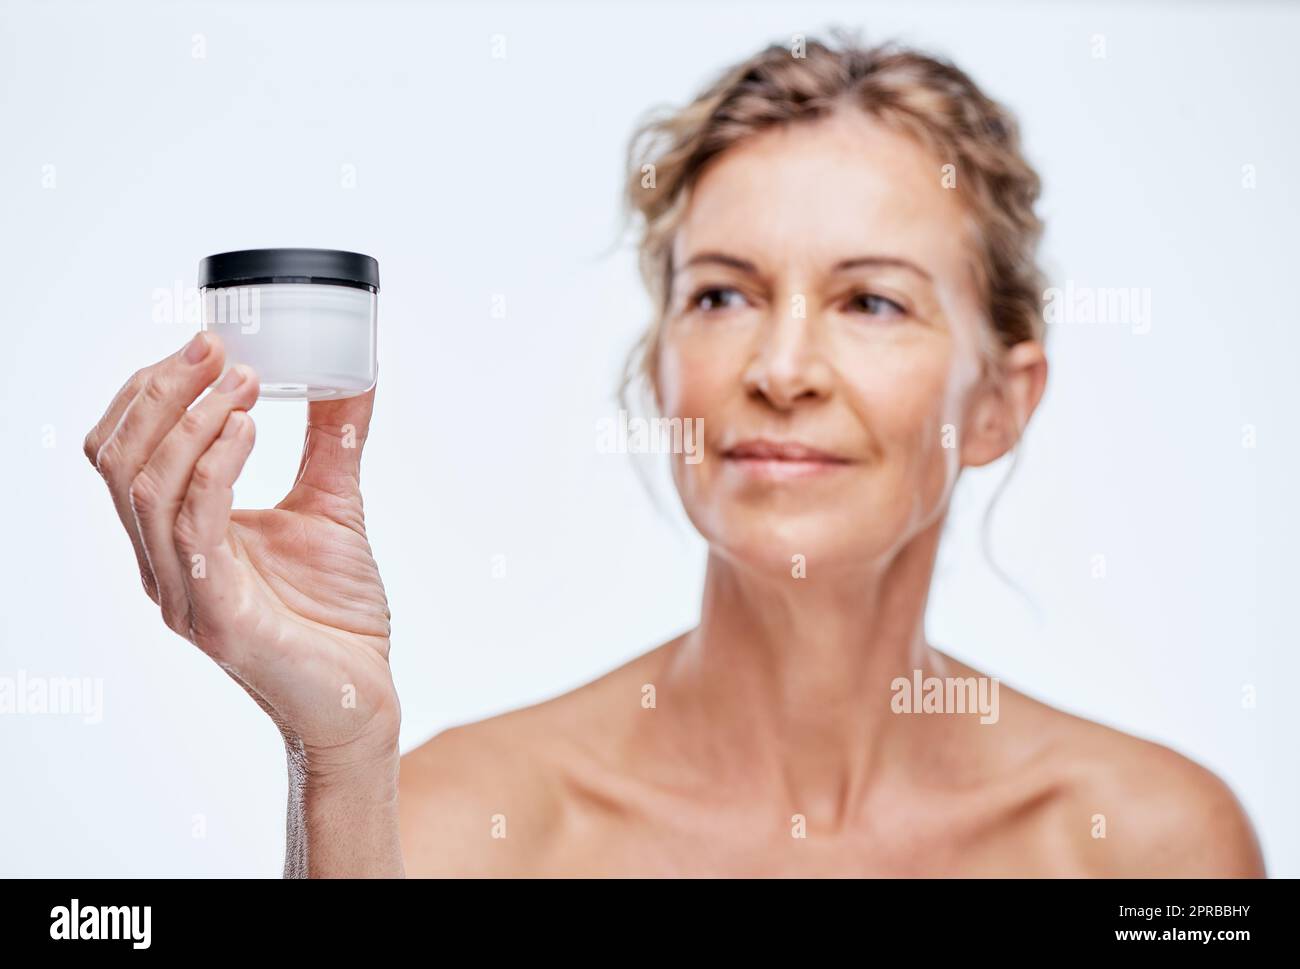 Es gibt nur ein Produkt, das für mich funktioniert. Eine reife Frau hält ein Beauty-Produkt vor einer Weile Hintergrund. Stockfoto